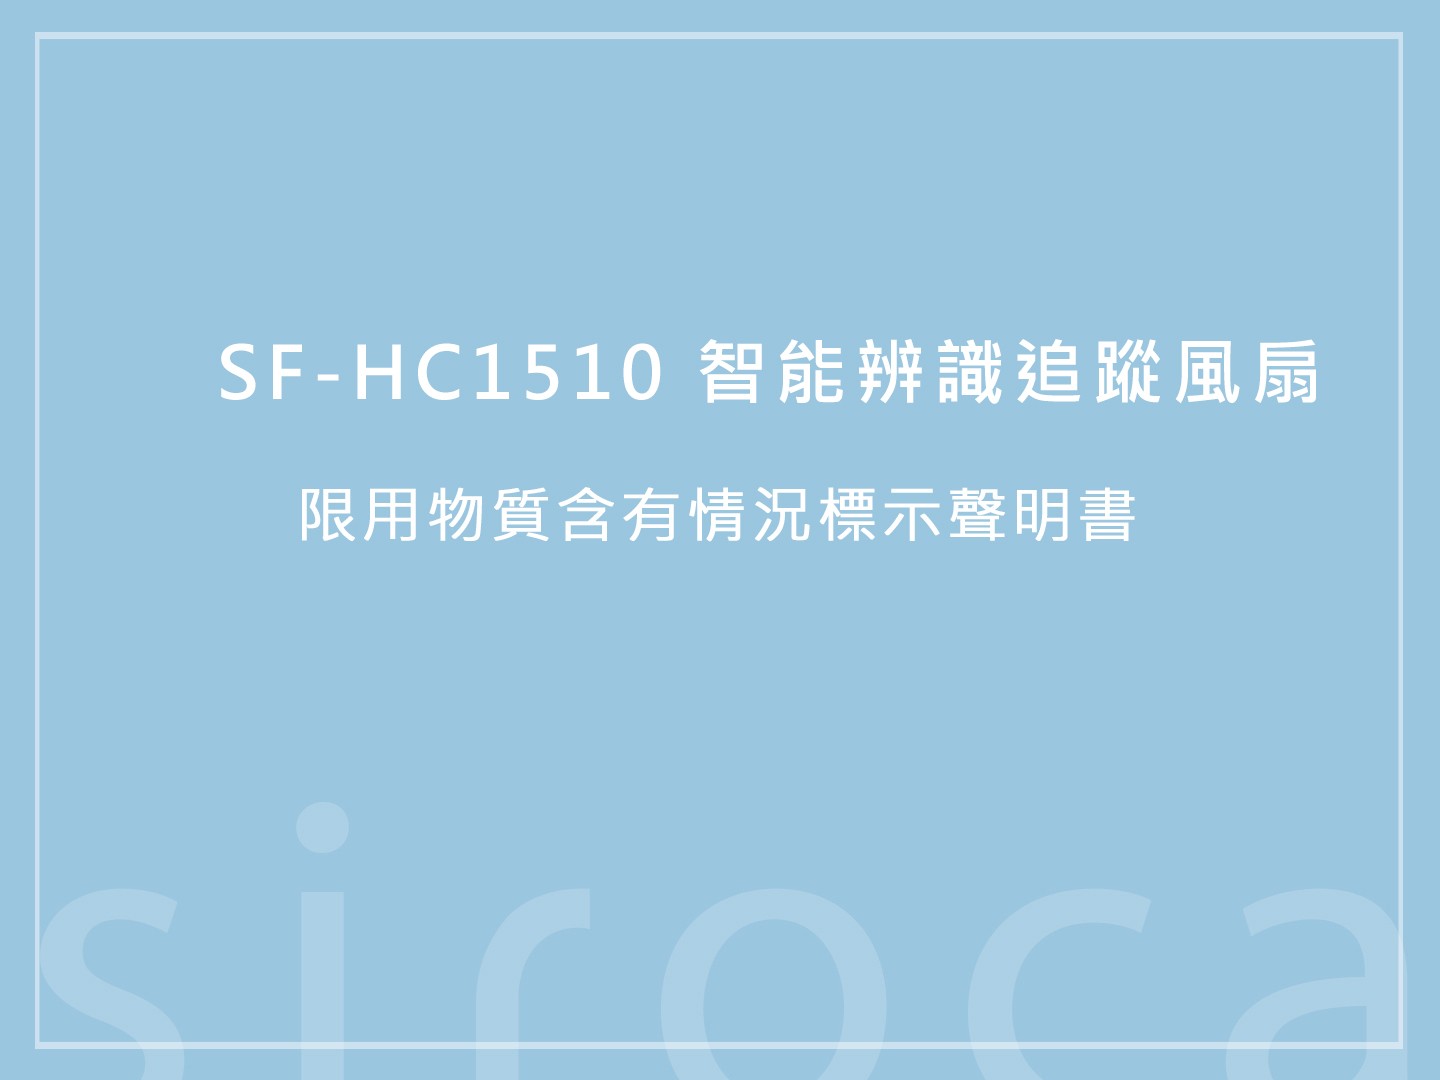 SF-HC1510智能辨識追蹤風扇 限用物質含有情況標示聲明